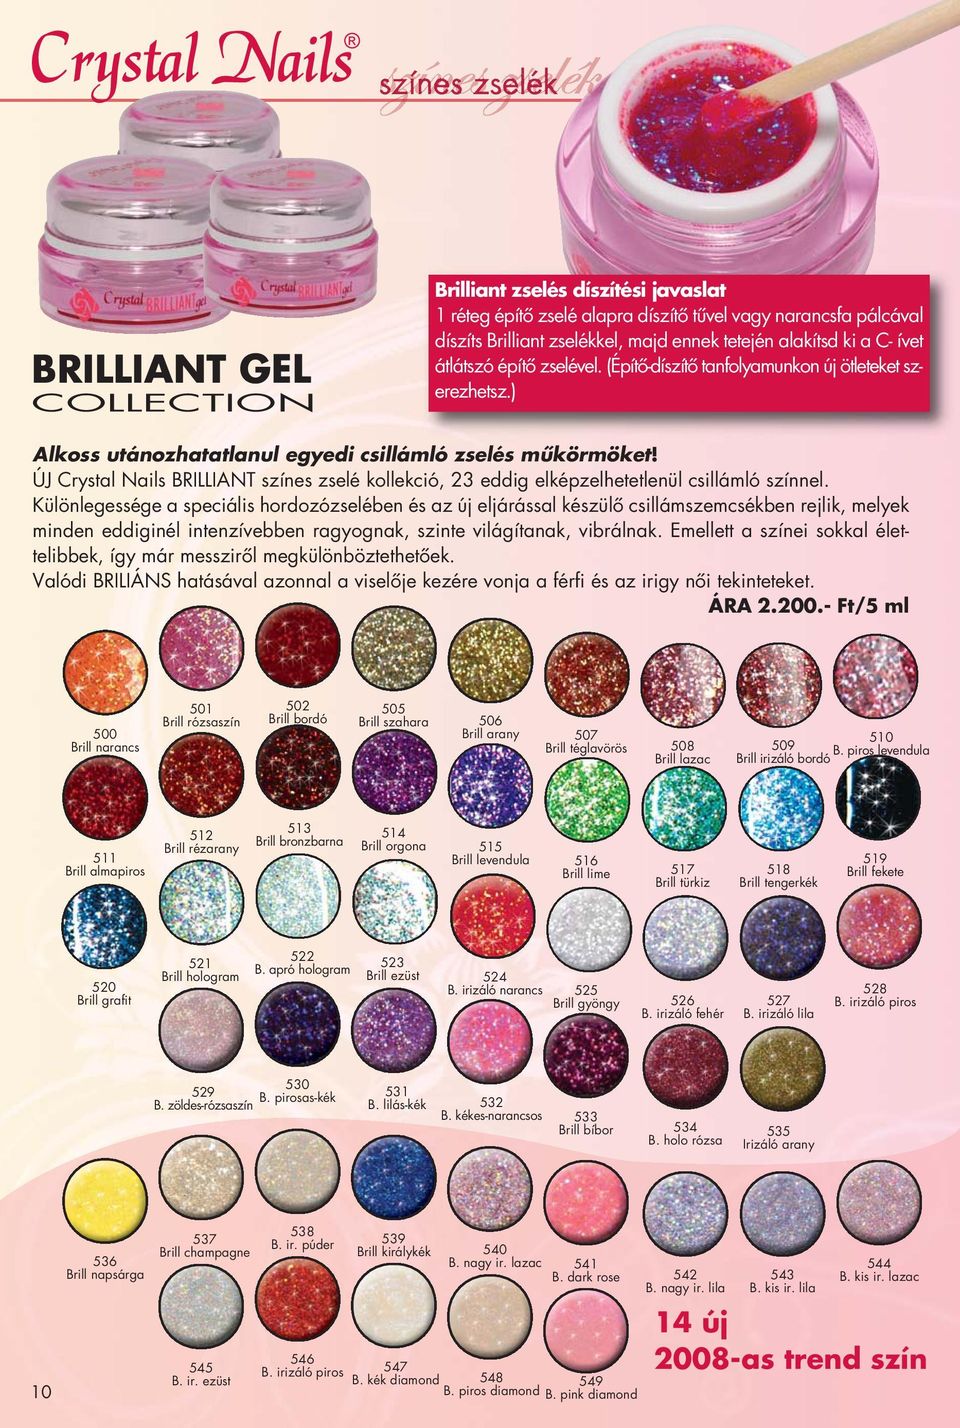 ÚJ Crystal Nails BRILLIANT színes zselé kollekció, 23 eddig elképzelhetetlenül csillámló színnel.